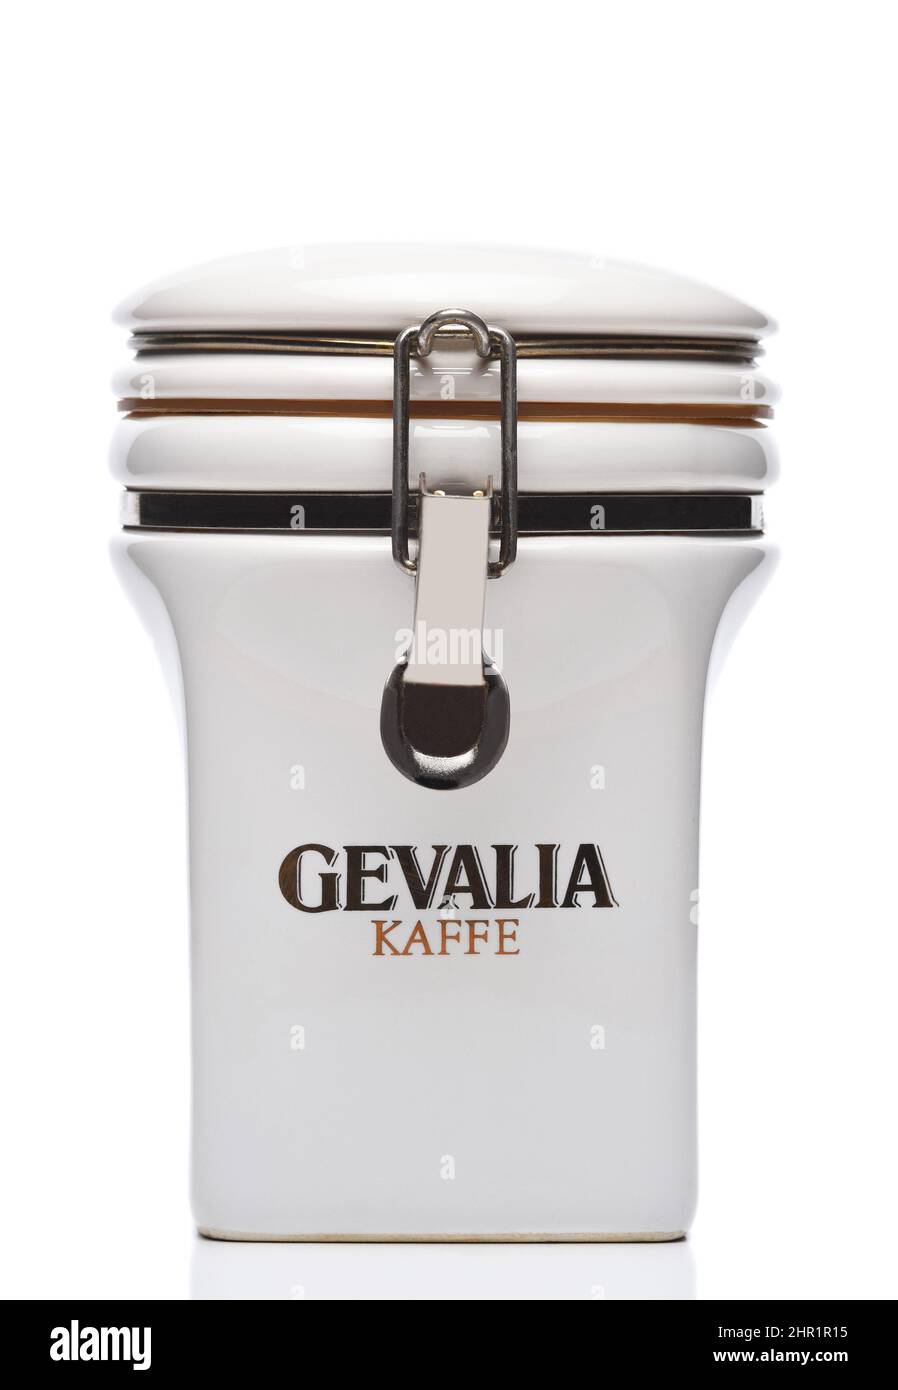 IRVINE, KALIFORNIEN - 21. FEB 2022: Gevalia Kaffe Kanister zur Lagerung des skandinavischen Kaffees. Stockfoto